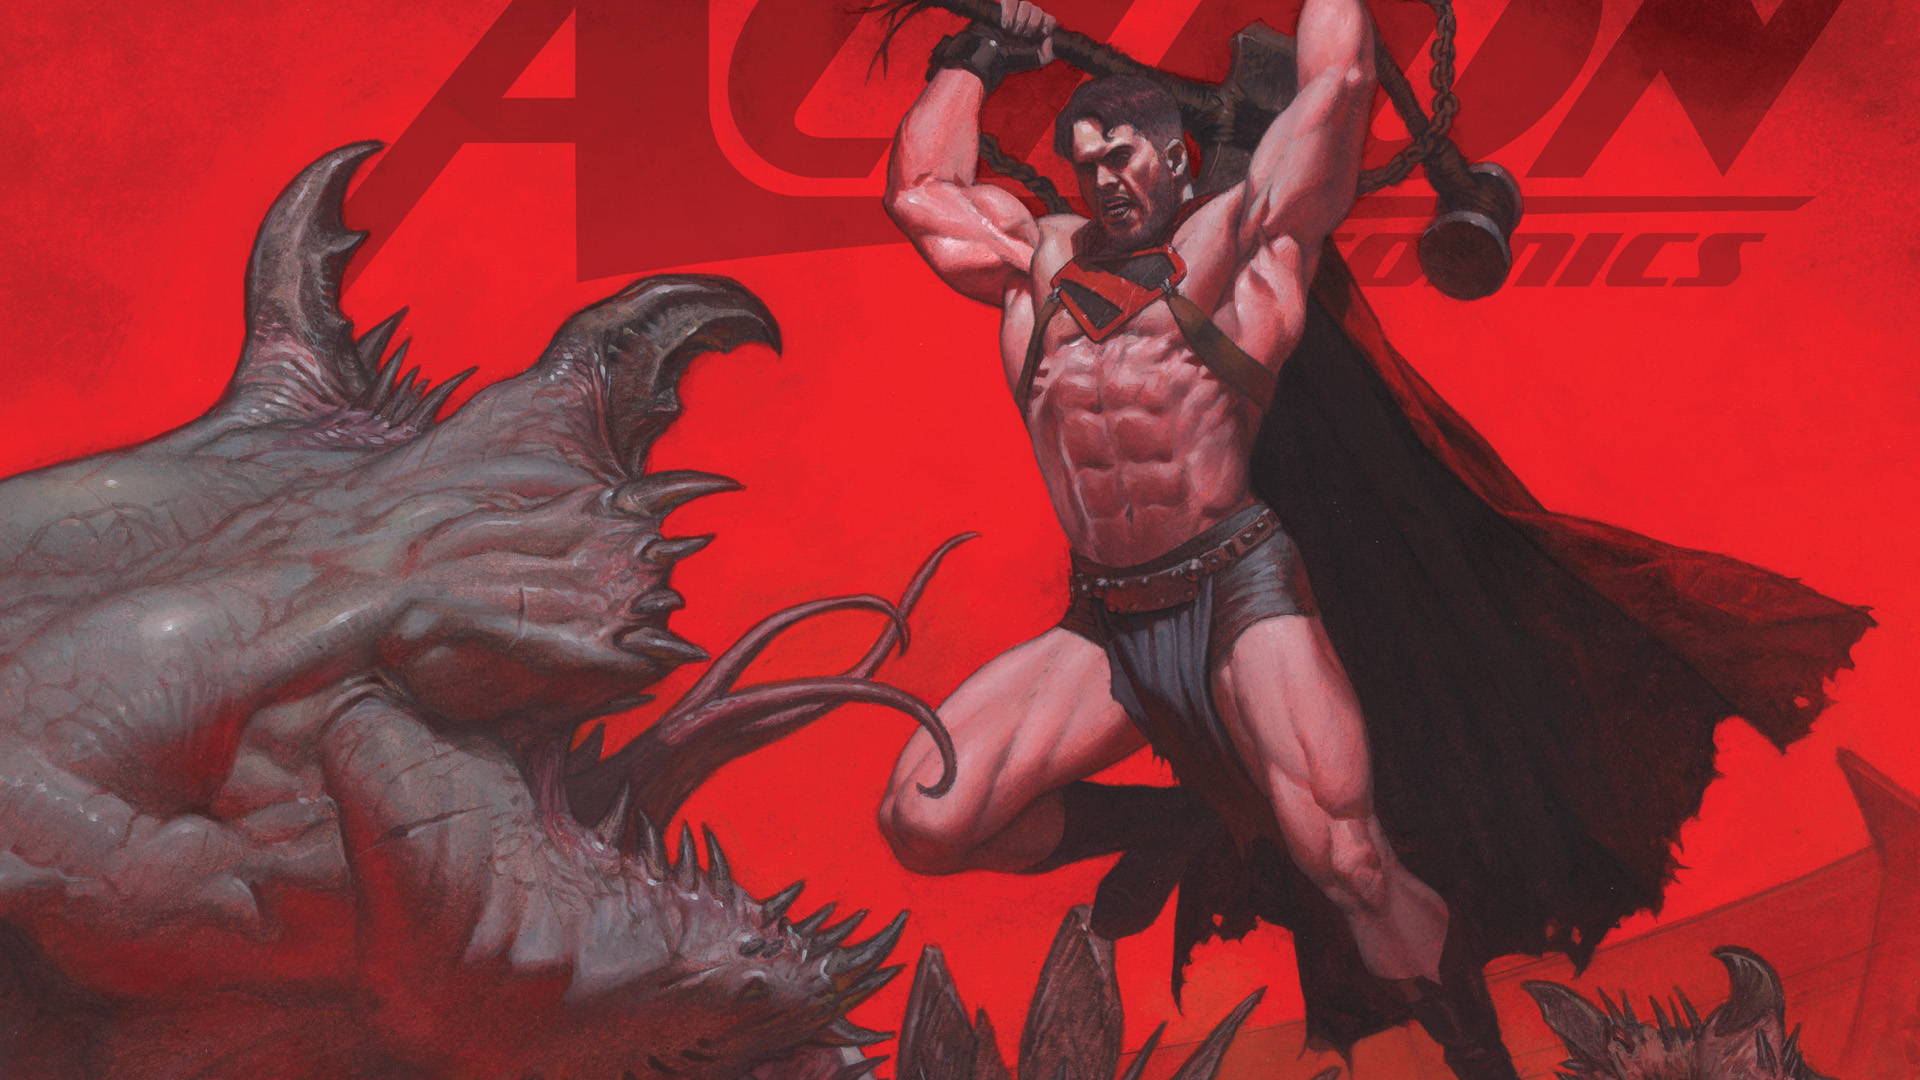 Action Comics #1042 - Mongul eredete, titokzatos bajnokai és Midnighter földalatti lázadása feltárul!